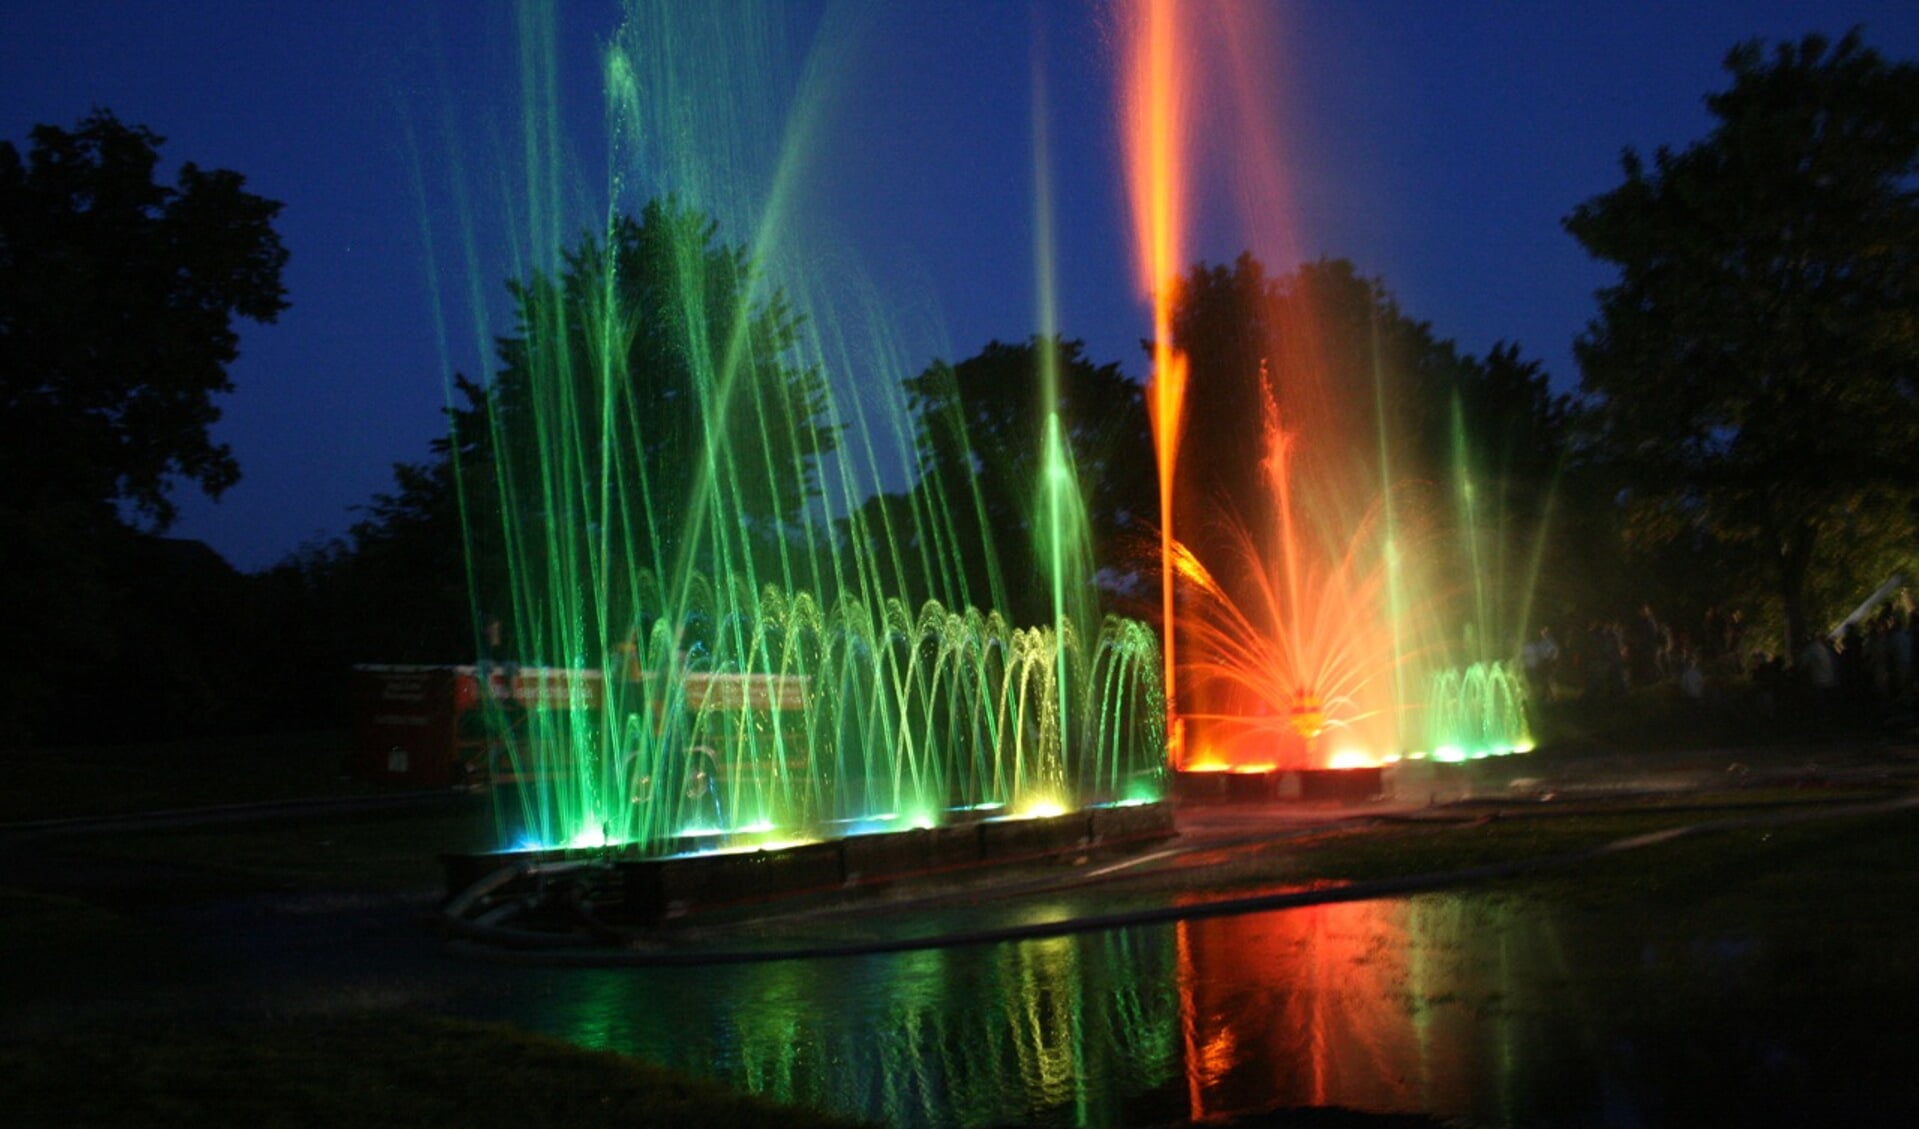  Ledlampen kleuren het water rood, blauw, groen en oranje.